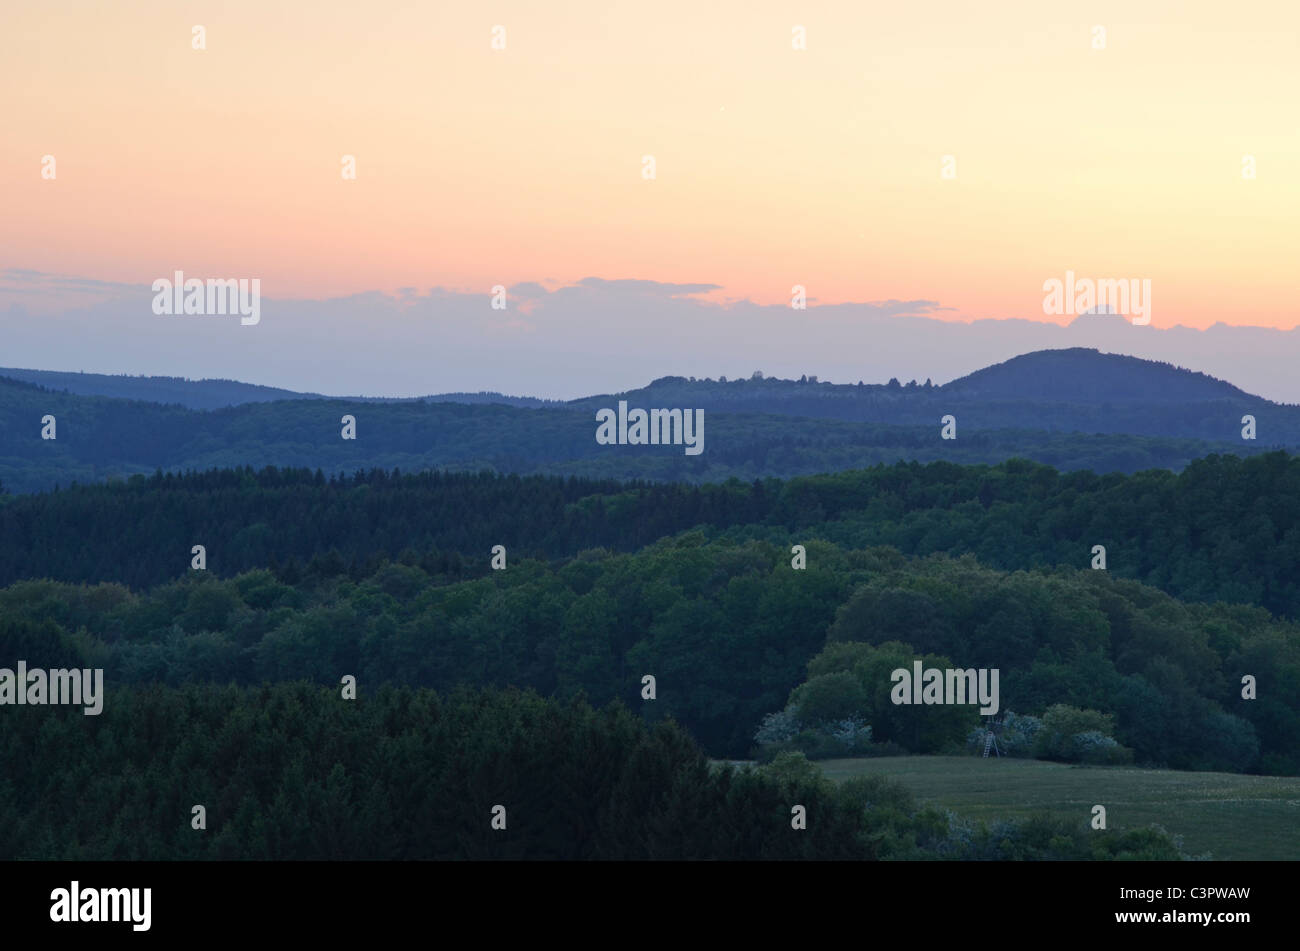 Foresta di legno alberi verdi colline del paese di montagna natura paesaggio naturale moody luce della sera tramonto cielo rosso Germania molla Foto Stock